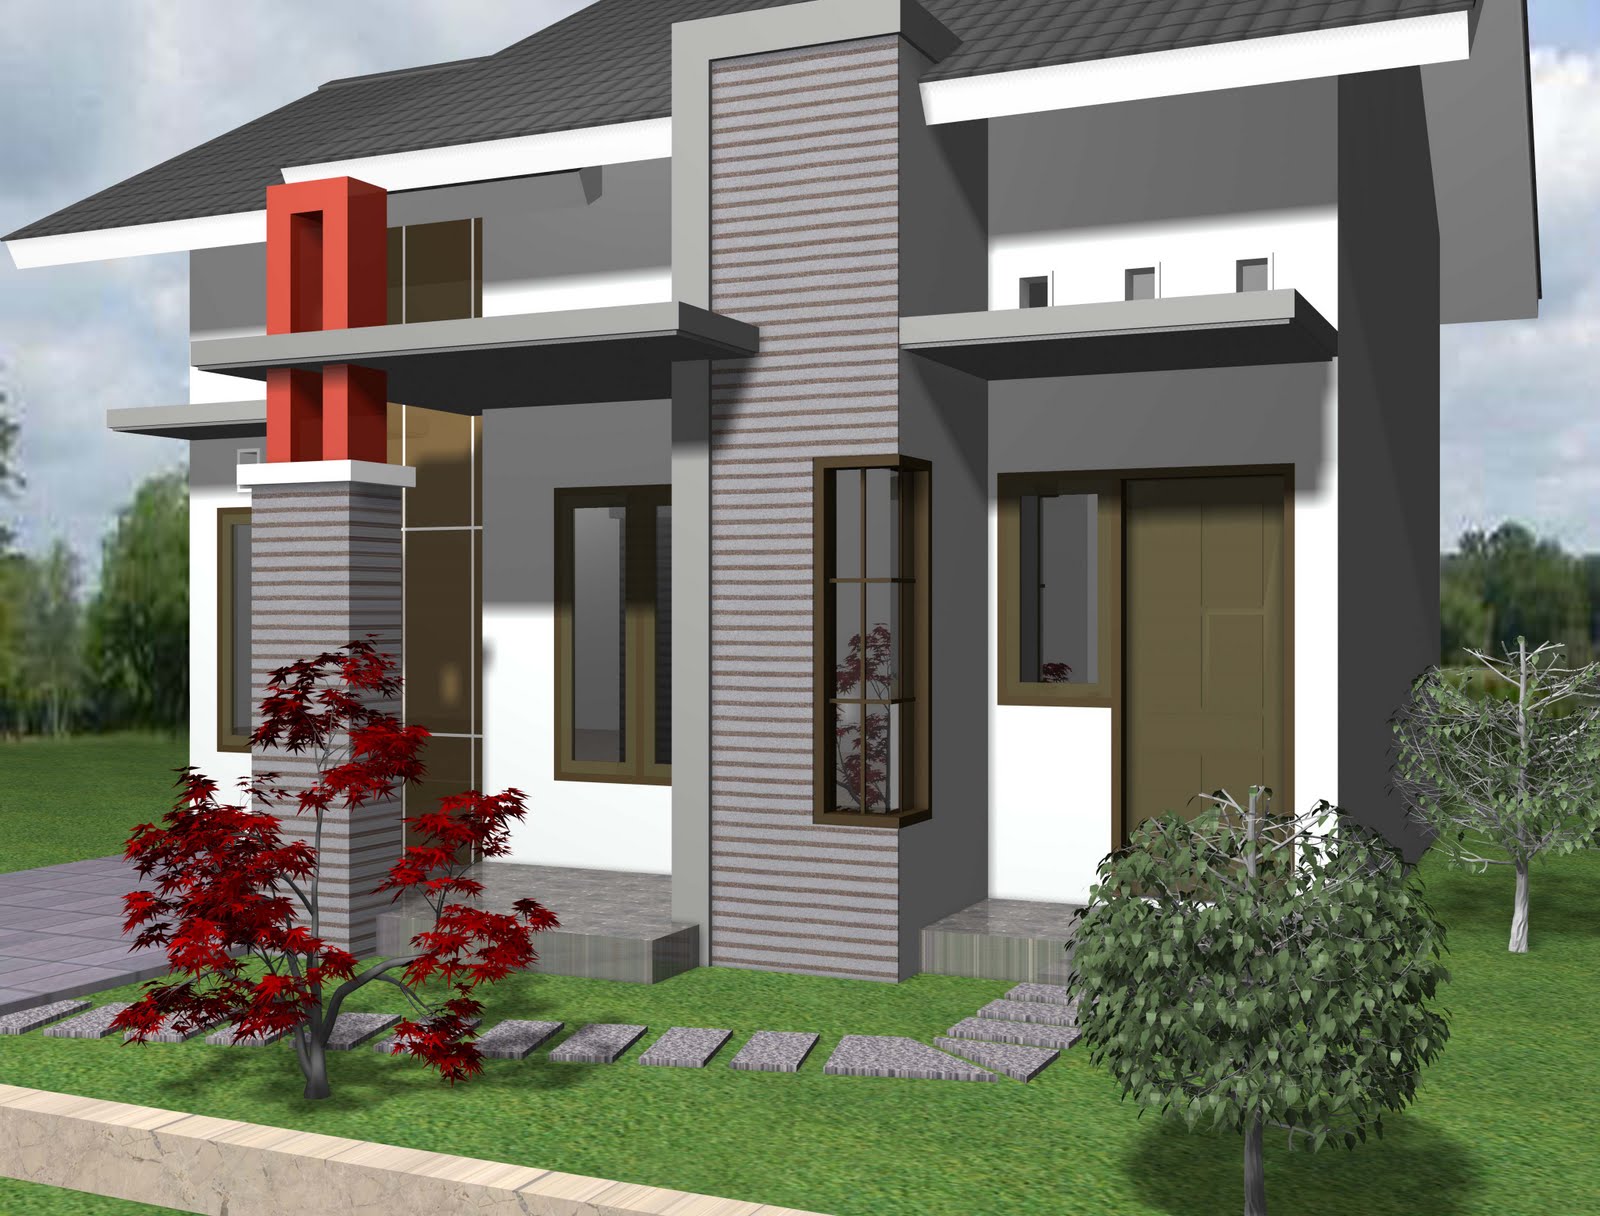 Desain Rumah Sederhana 1 Lantai - Model Rumah Minimalis ...